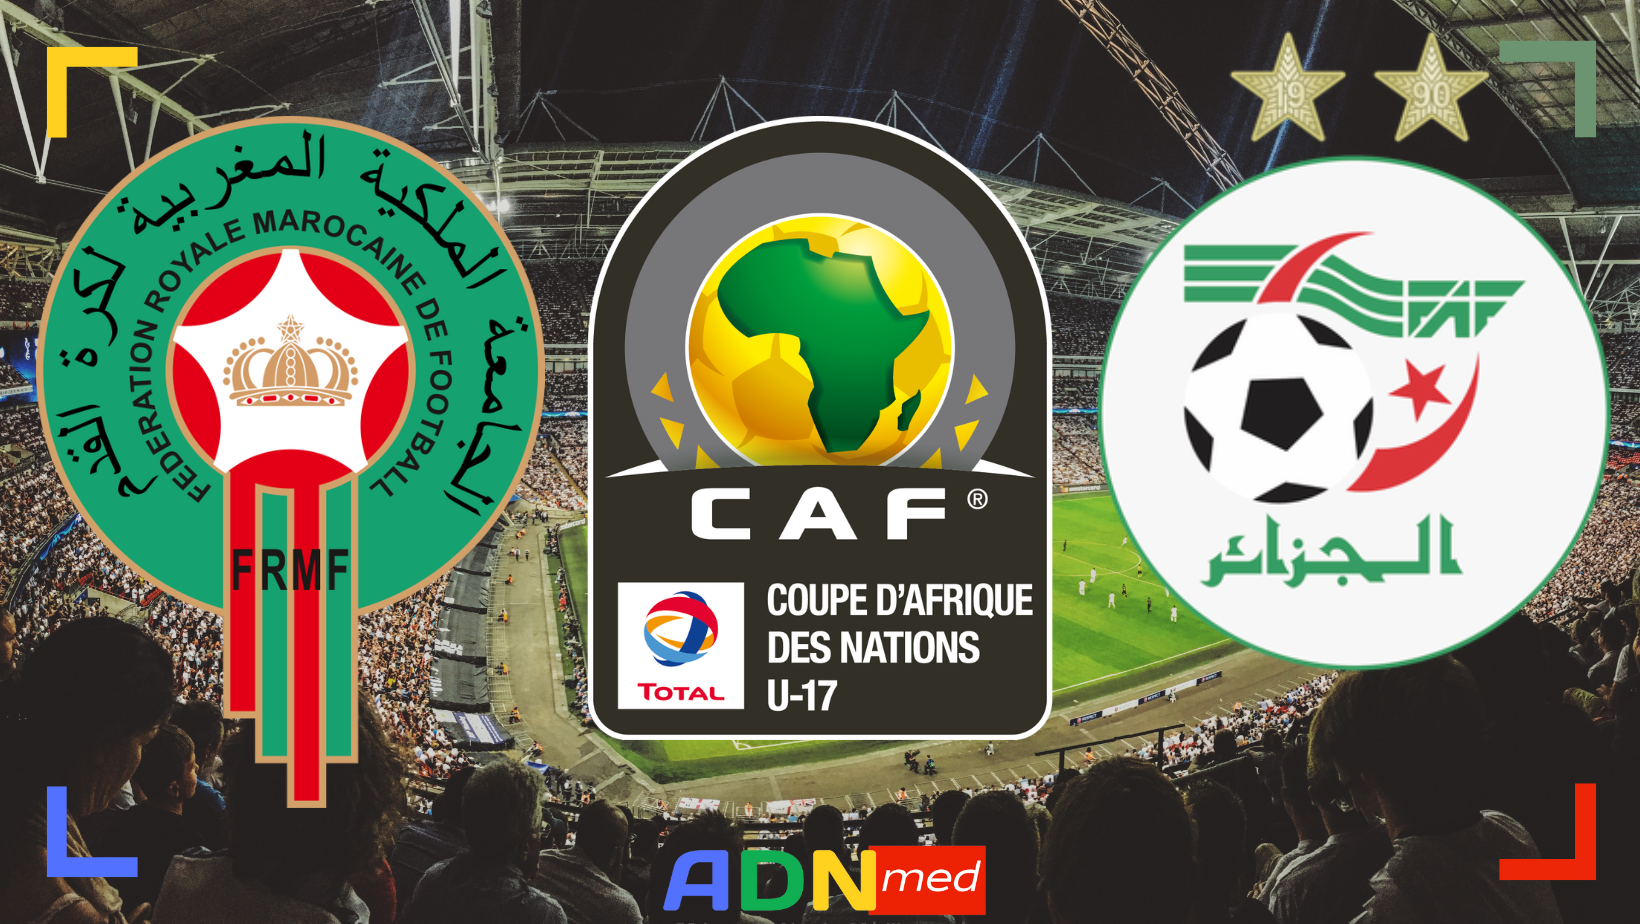 Football. Le Maroc participera-t-il à la prochaine CAN U17 organisée en Algérie ?